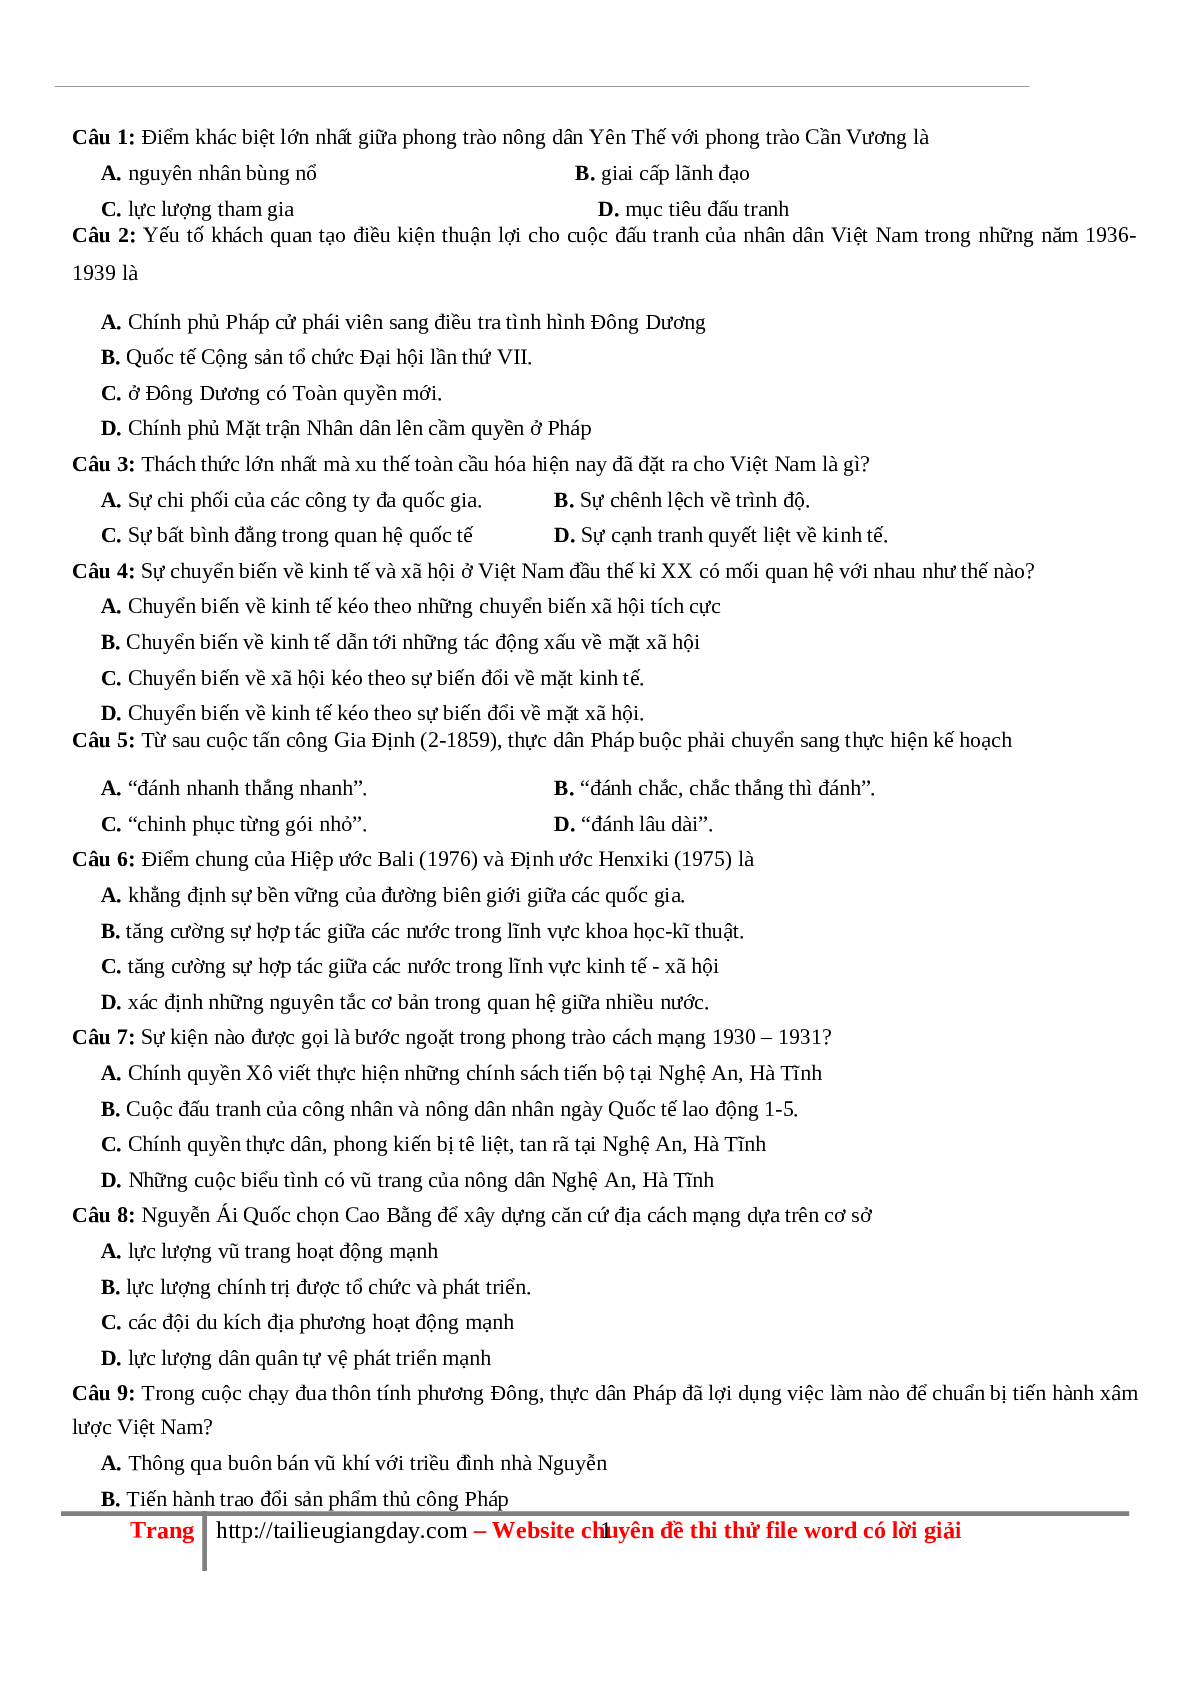 70 câu hỏi ôn tập hay - Lịch Sử 12 (trang 1)